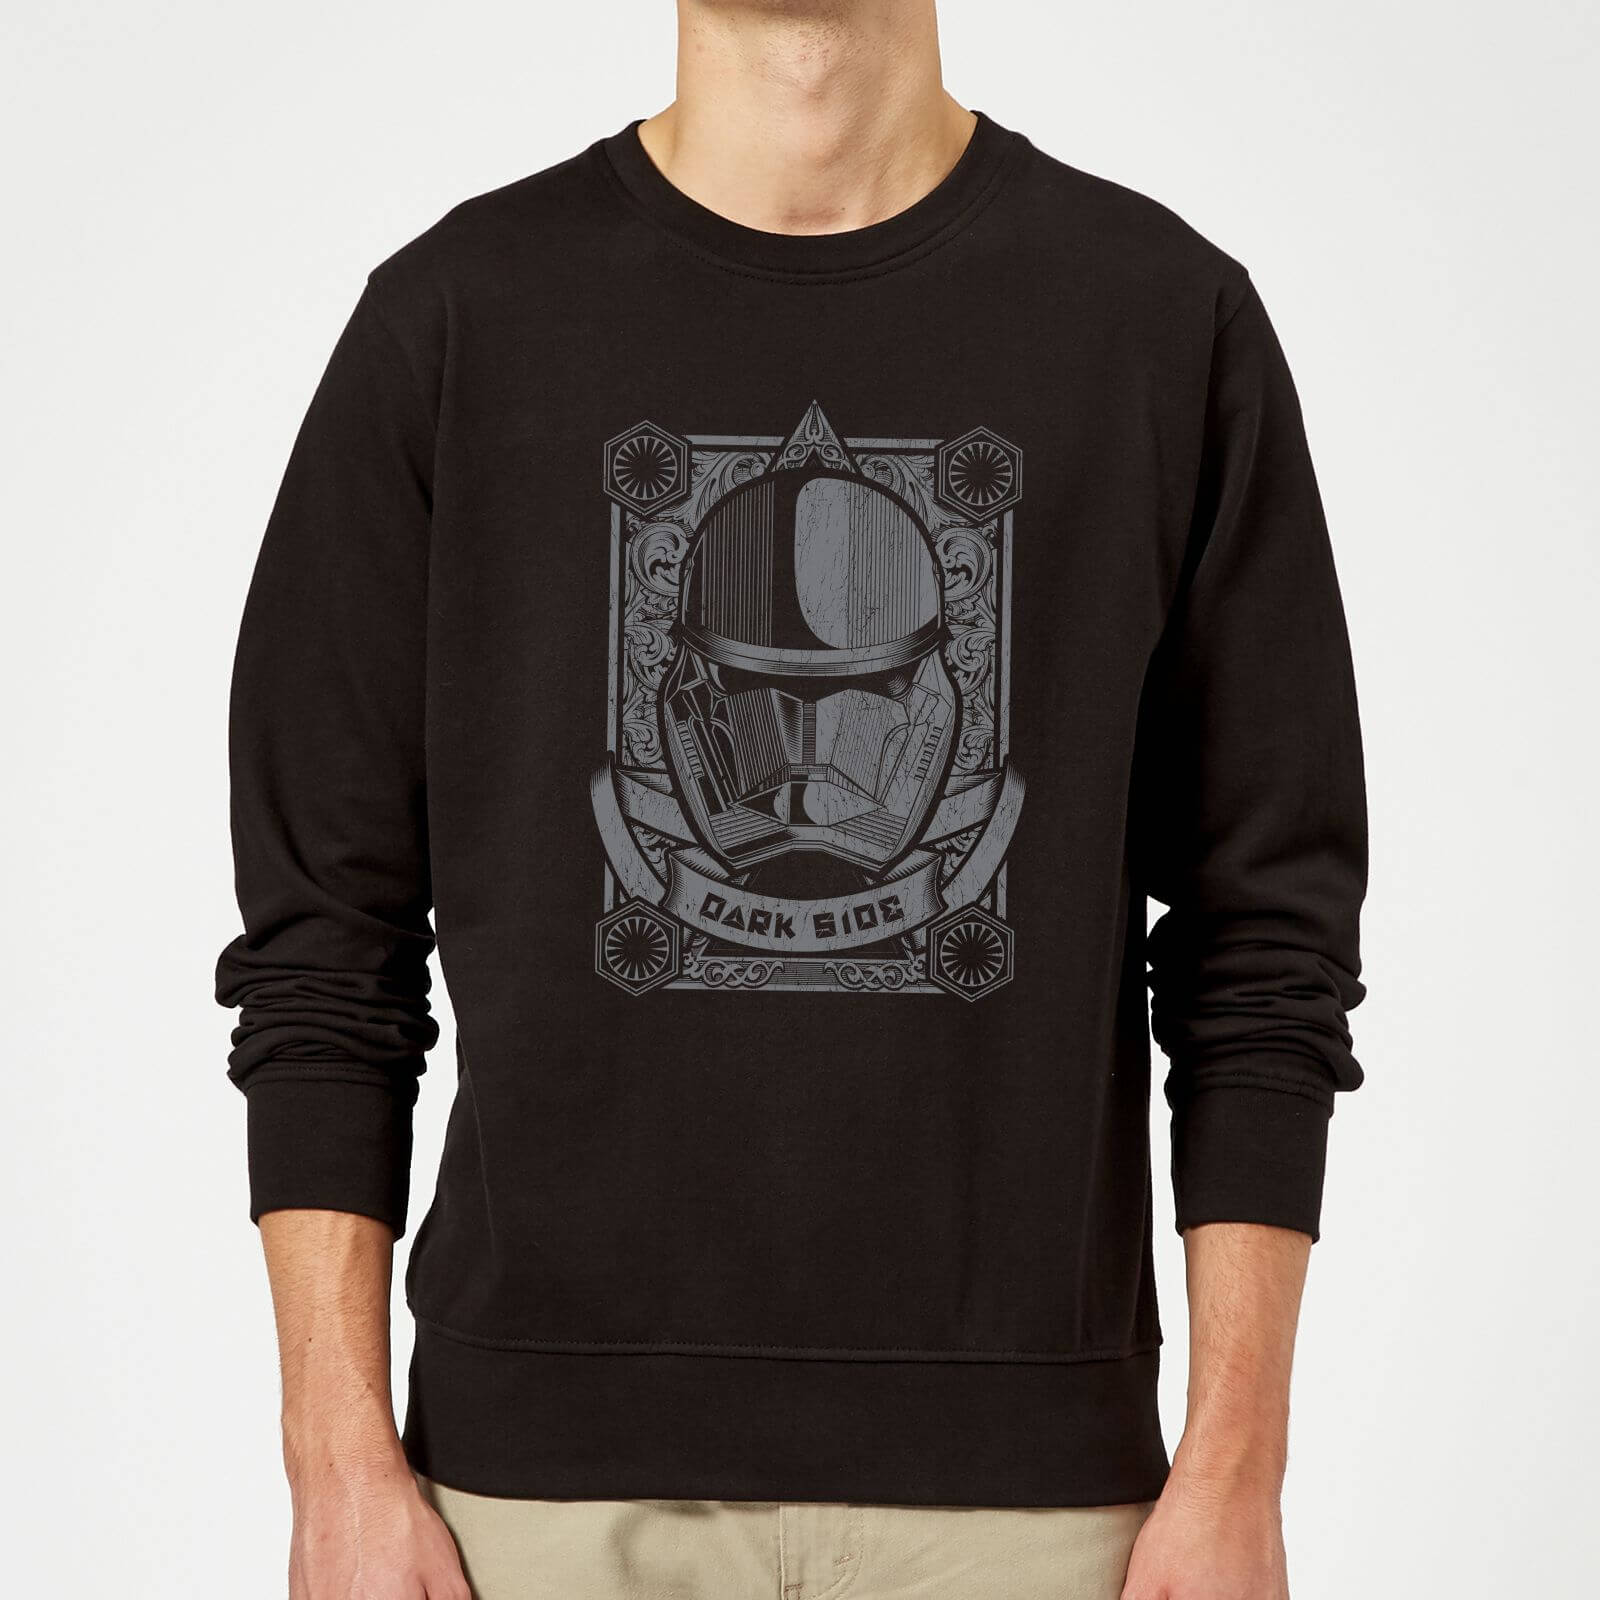 Star Wars Darkside Trooper Sweatshirt - Black - S - Black